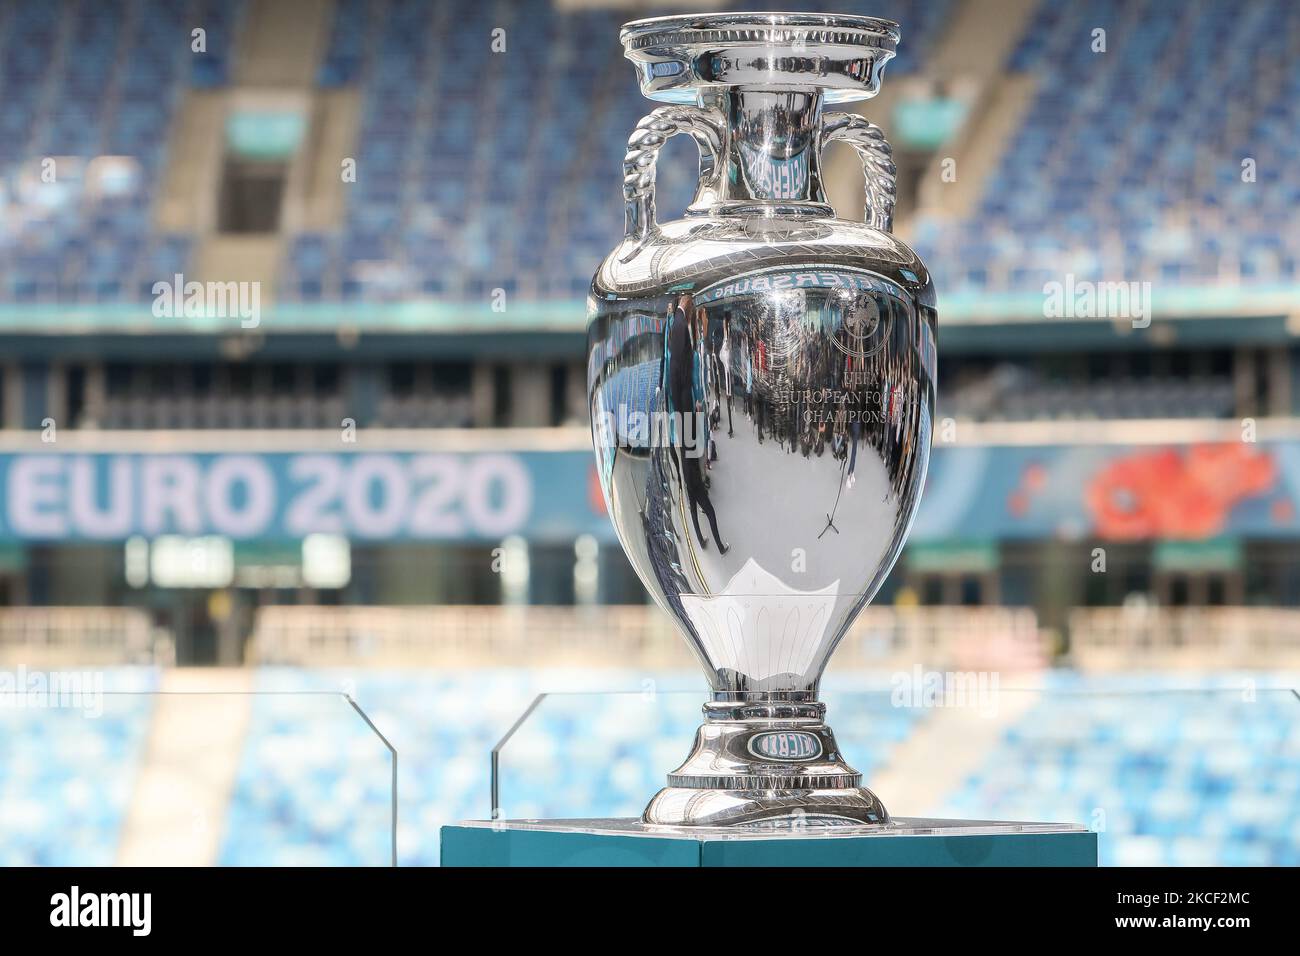 La coupe Henri Delaunay, le trophée de l'UEFA Euro 2020, est exposée lors d'une tournée médiatique au stade Gazprom Arena, l'un des lieux d'accueil du tournoi, à 22 mai 2021, à Saint-Pétersbourg, en Russie. (Photo de Mike Kireev/NurPhoto) Banque D'Images